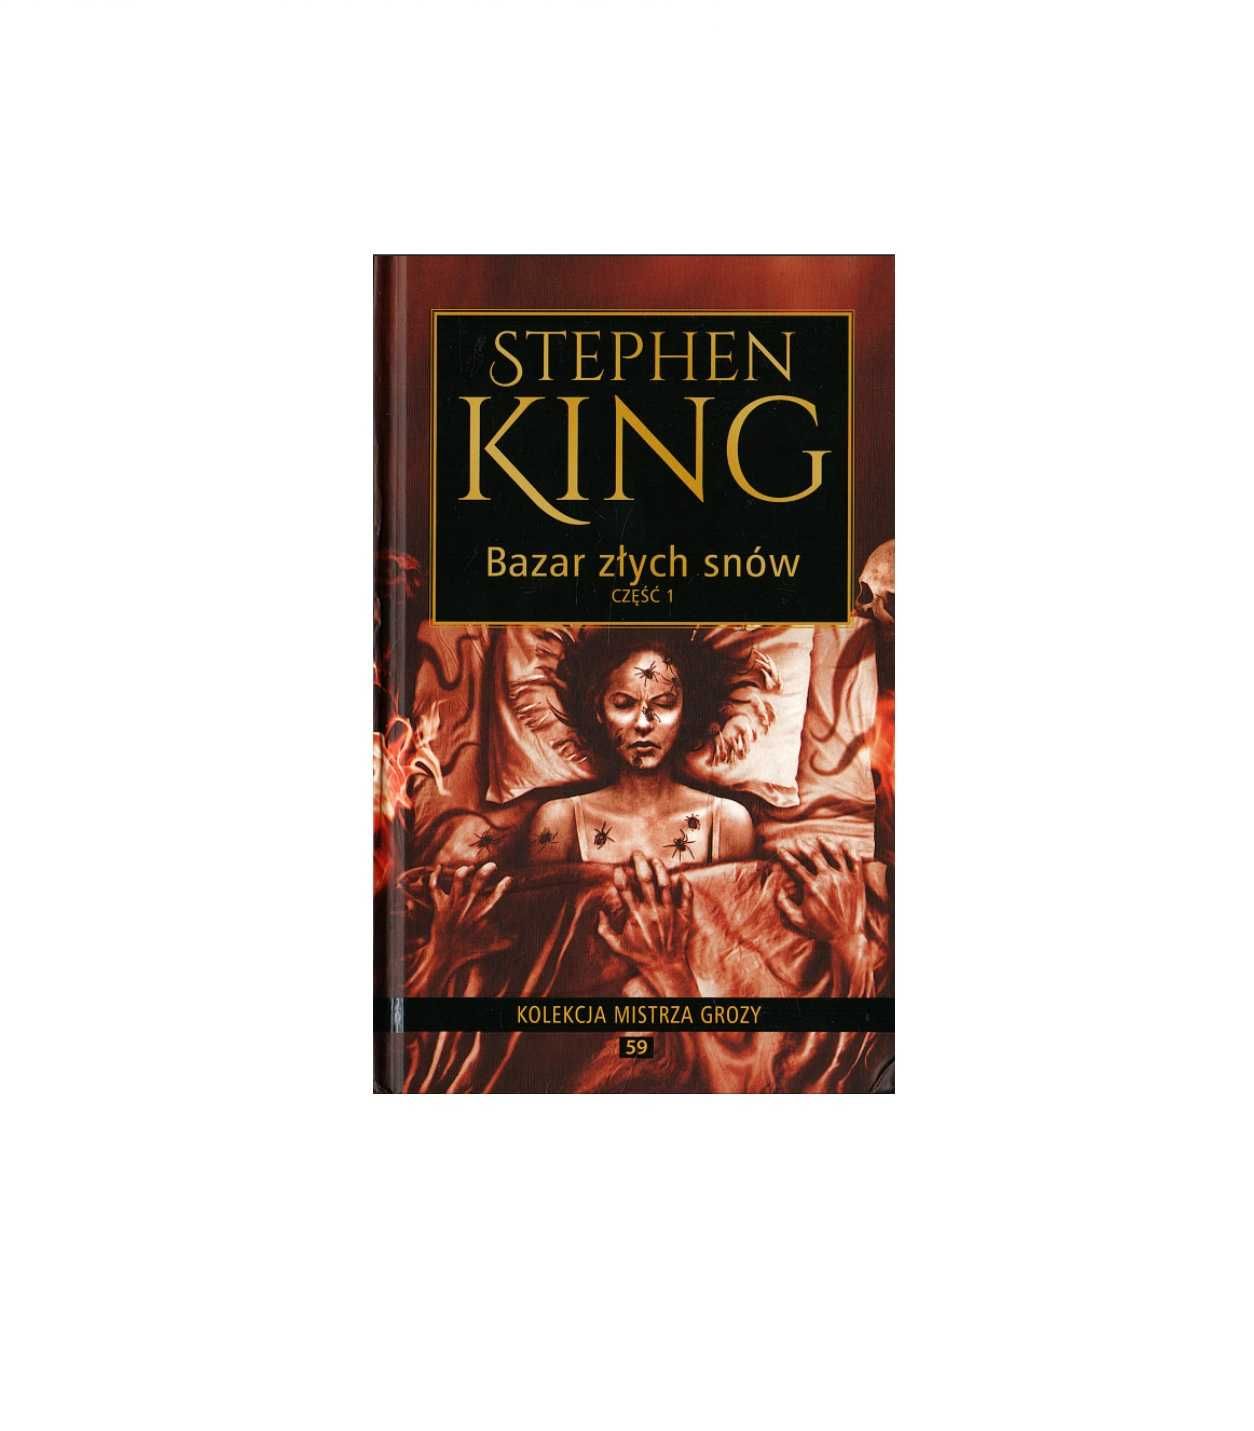 Bazar złych snów część 1 - Stephen King